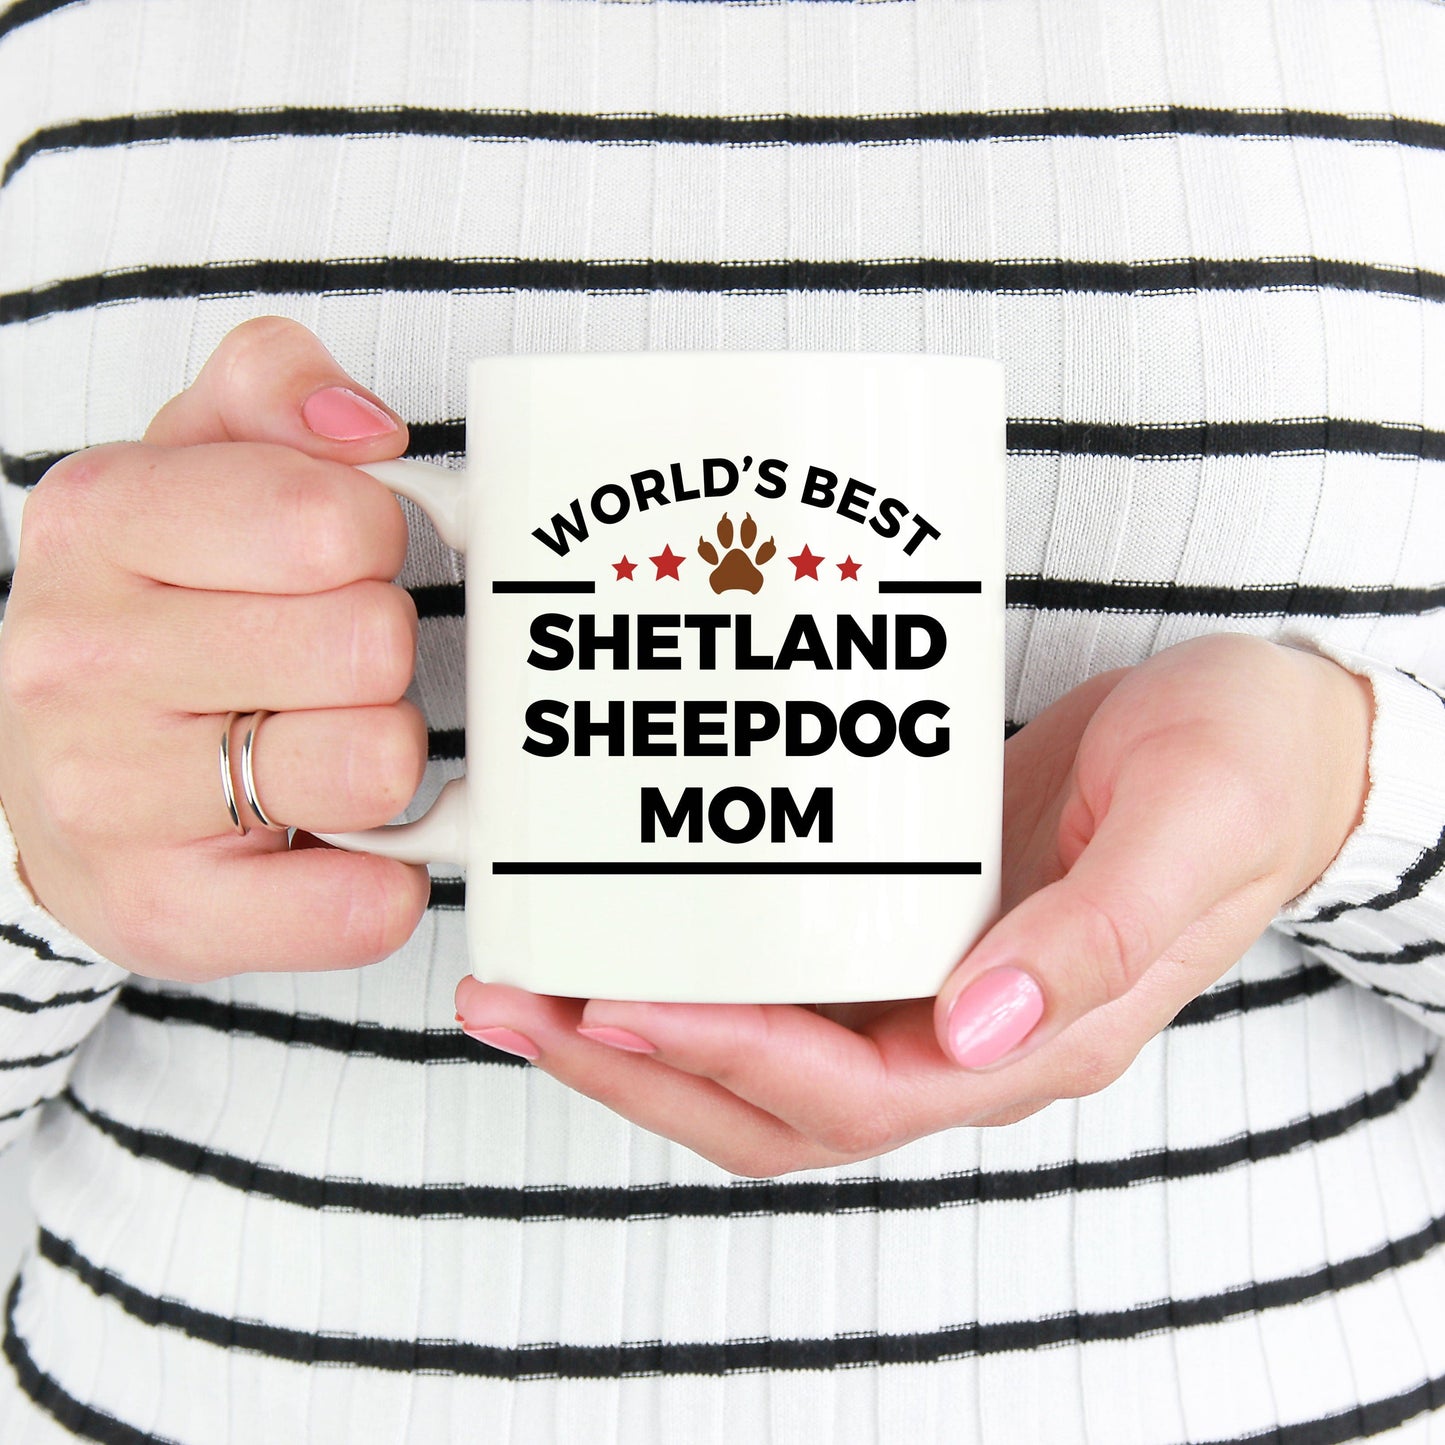 Shetland Sheepdog Mom Coffee Mug